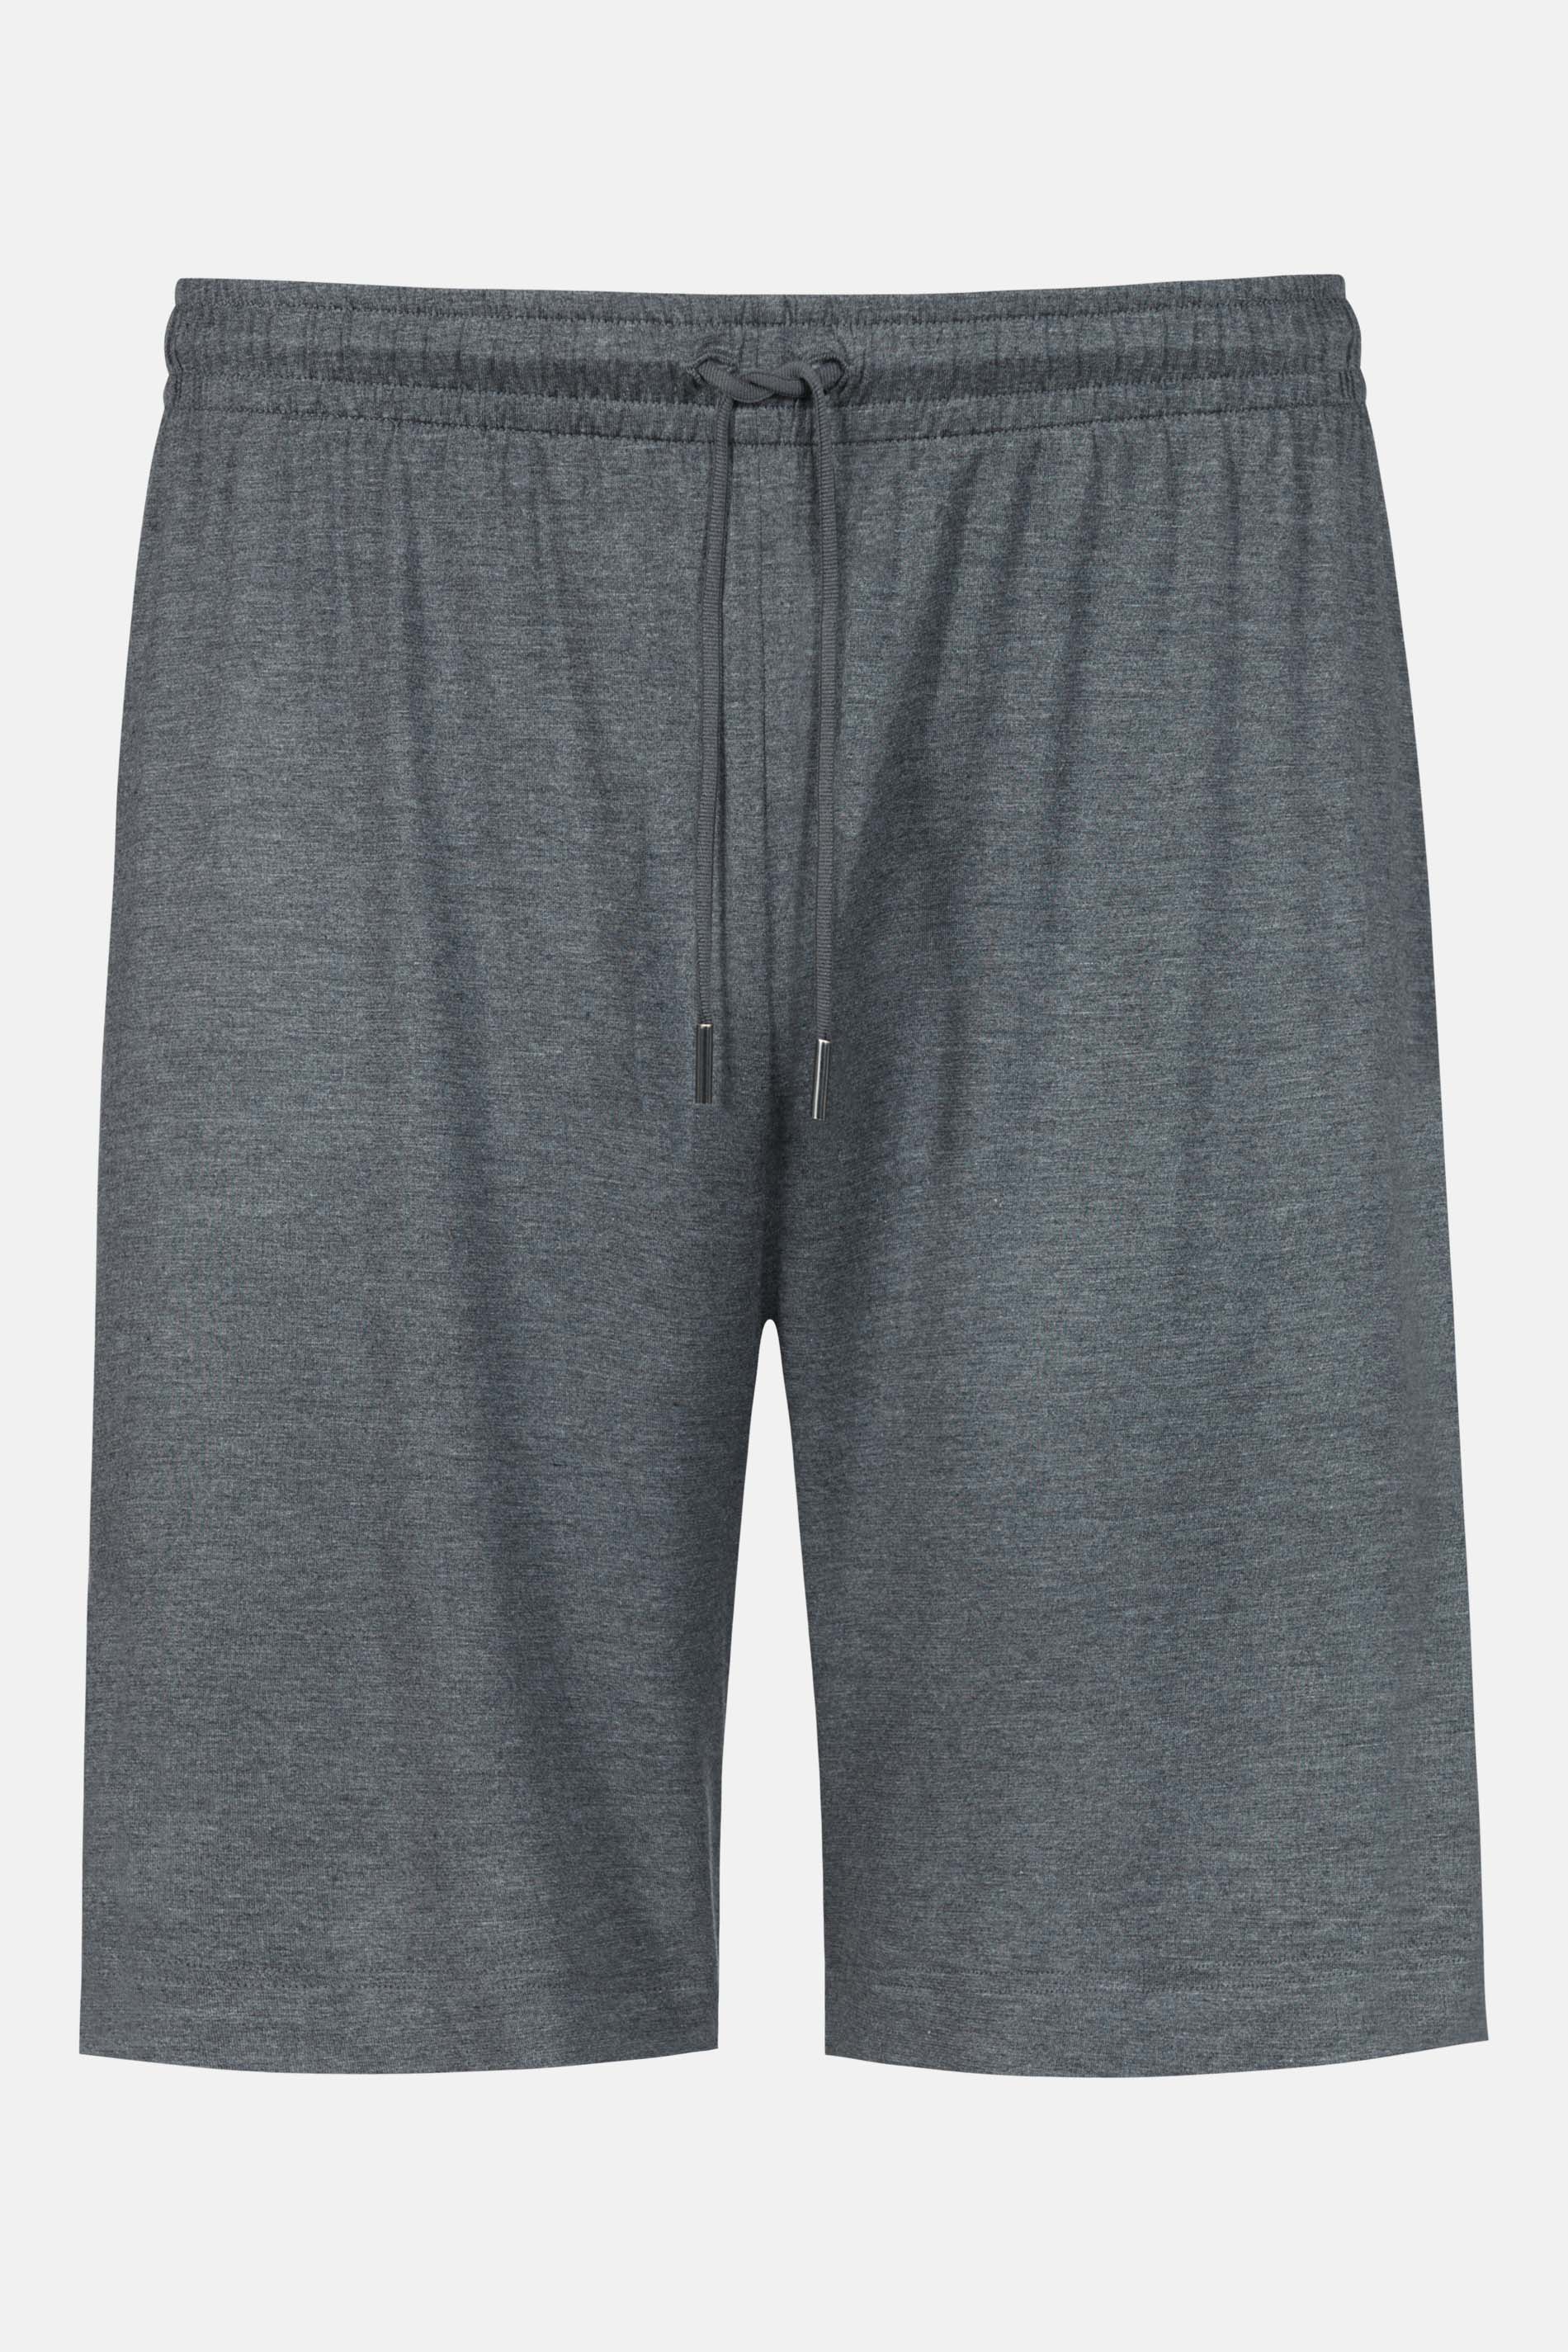 Short pants Serie Jefferson Modal Cut Out | mey®